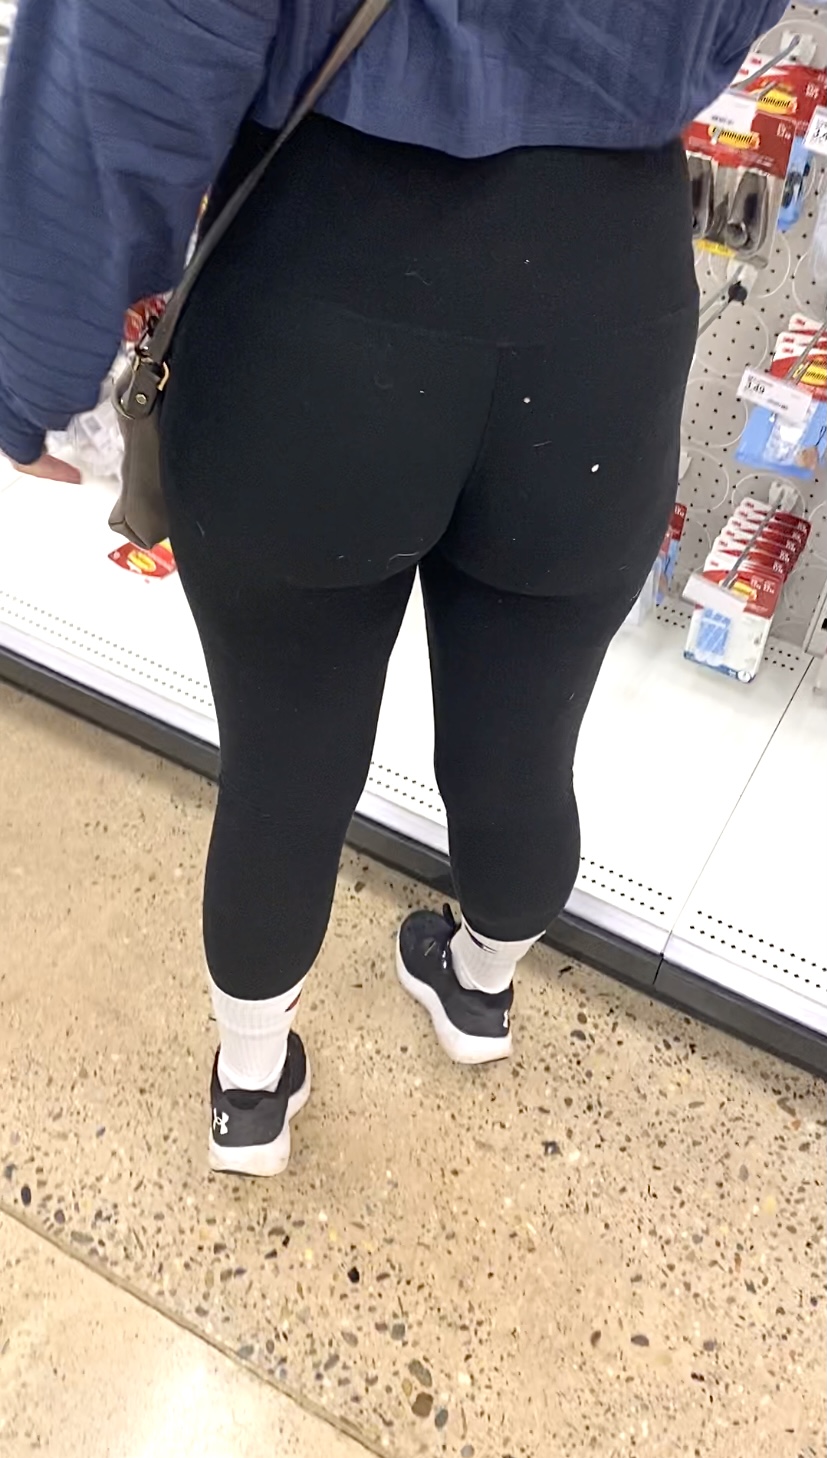 Juicy Ass Black Leggings Vtl At Target Spandex Leggings And Yoga Pants